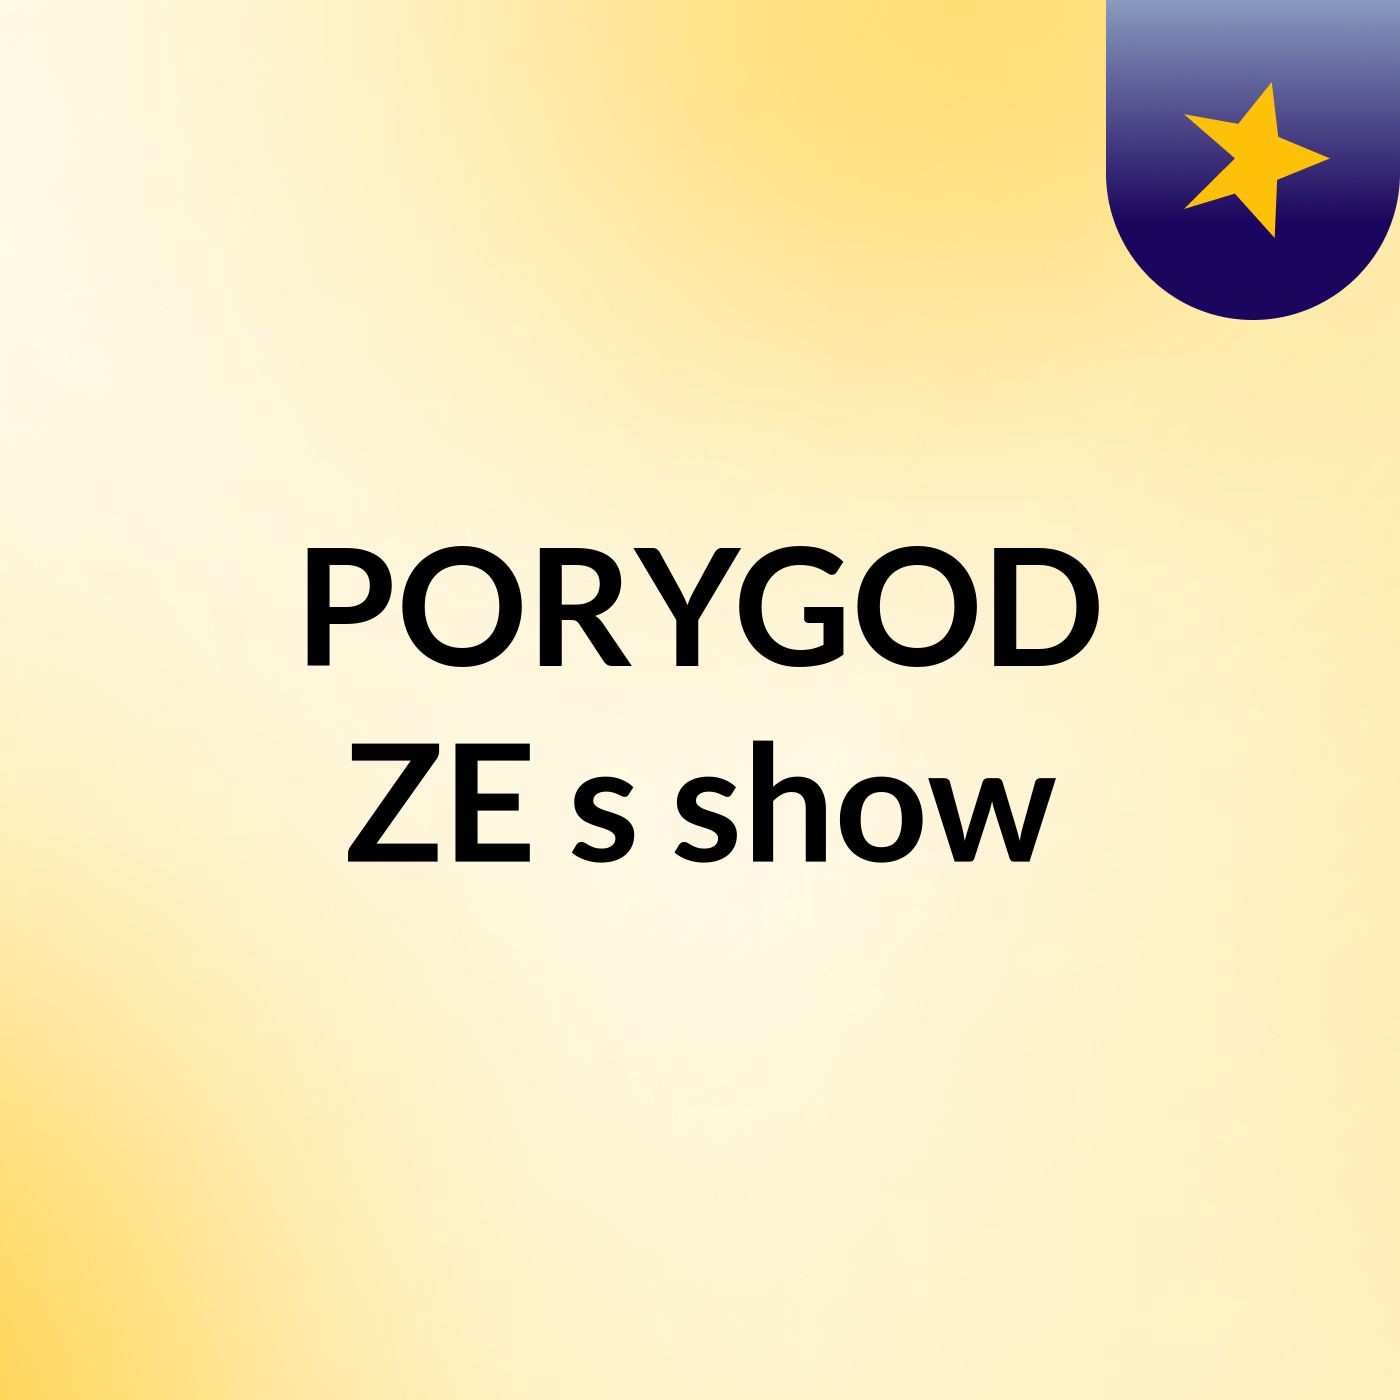 PORYGOD ZE's show